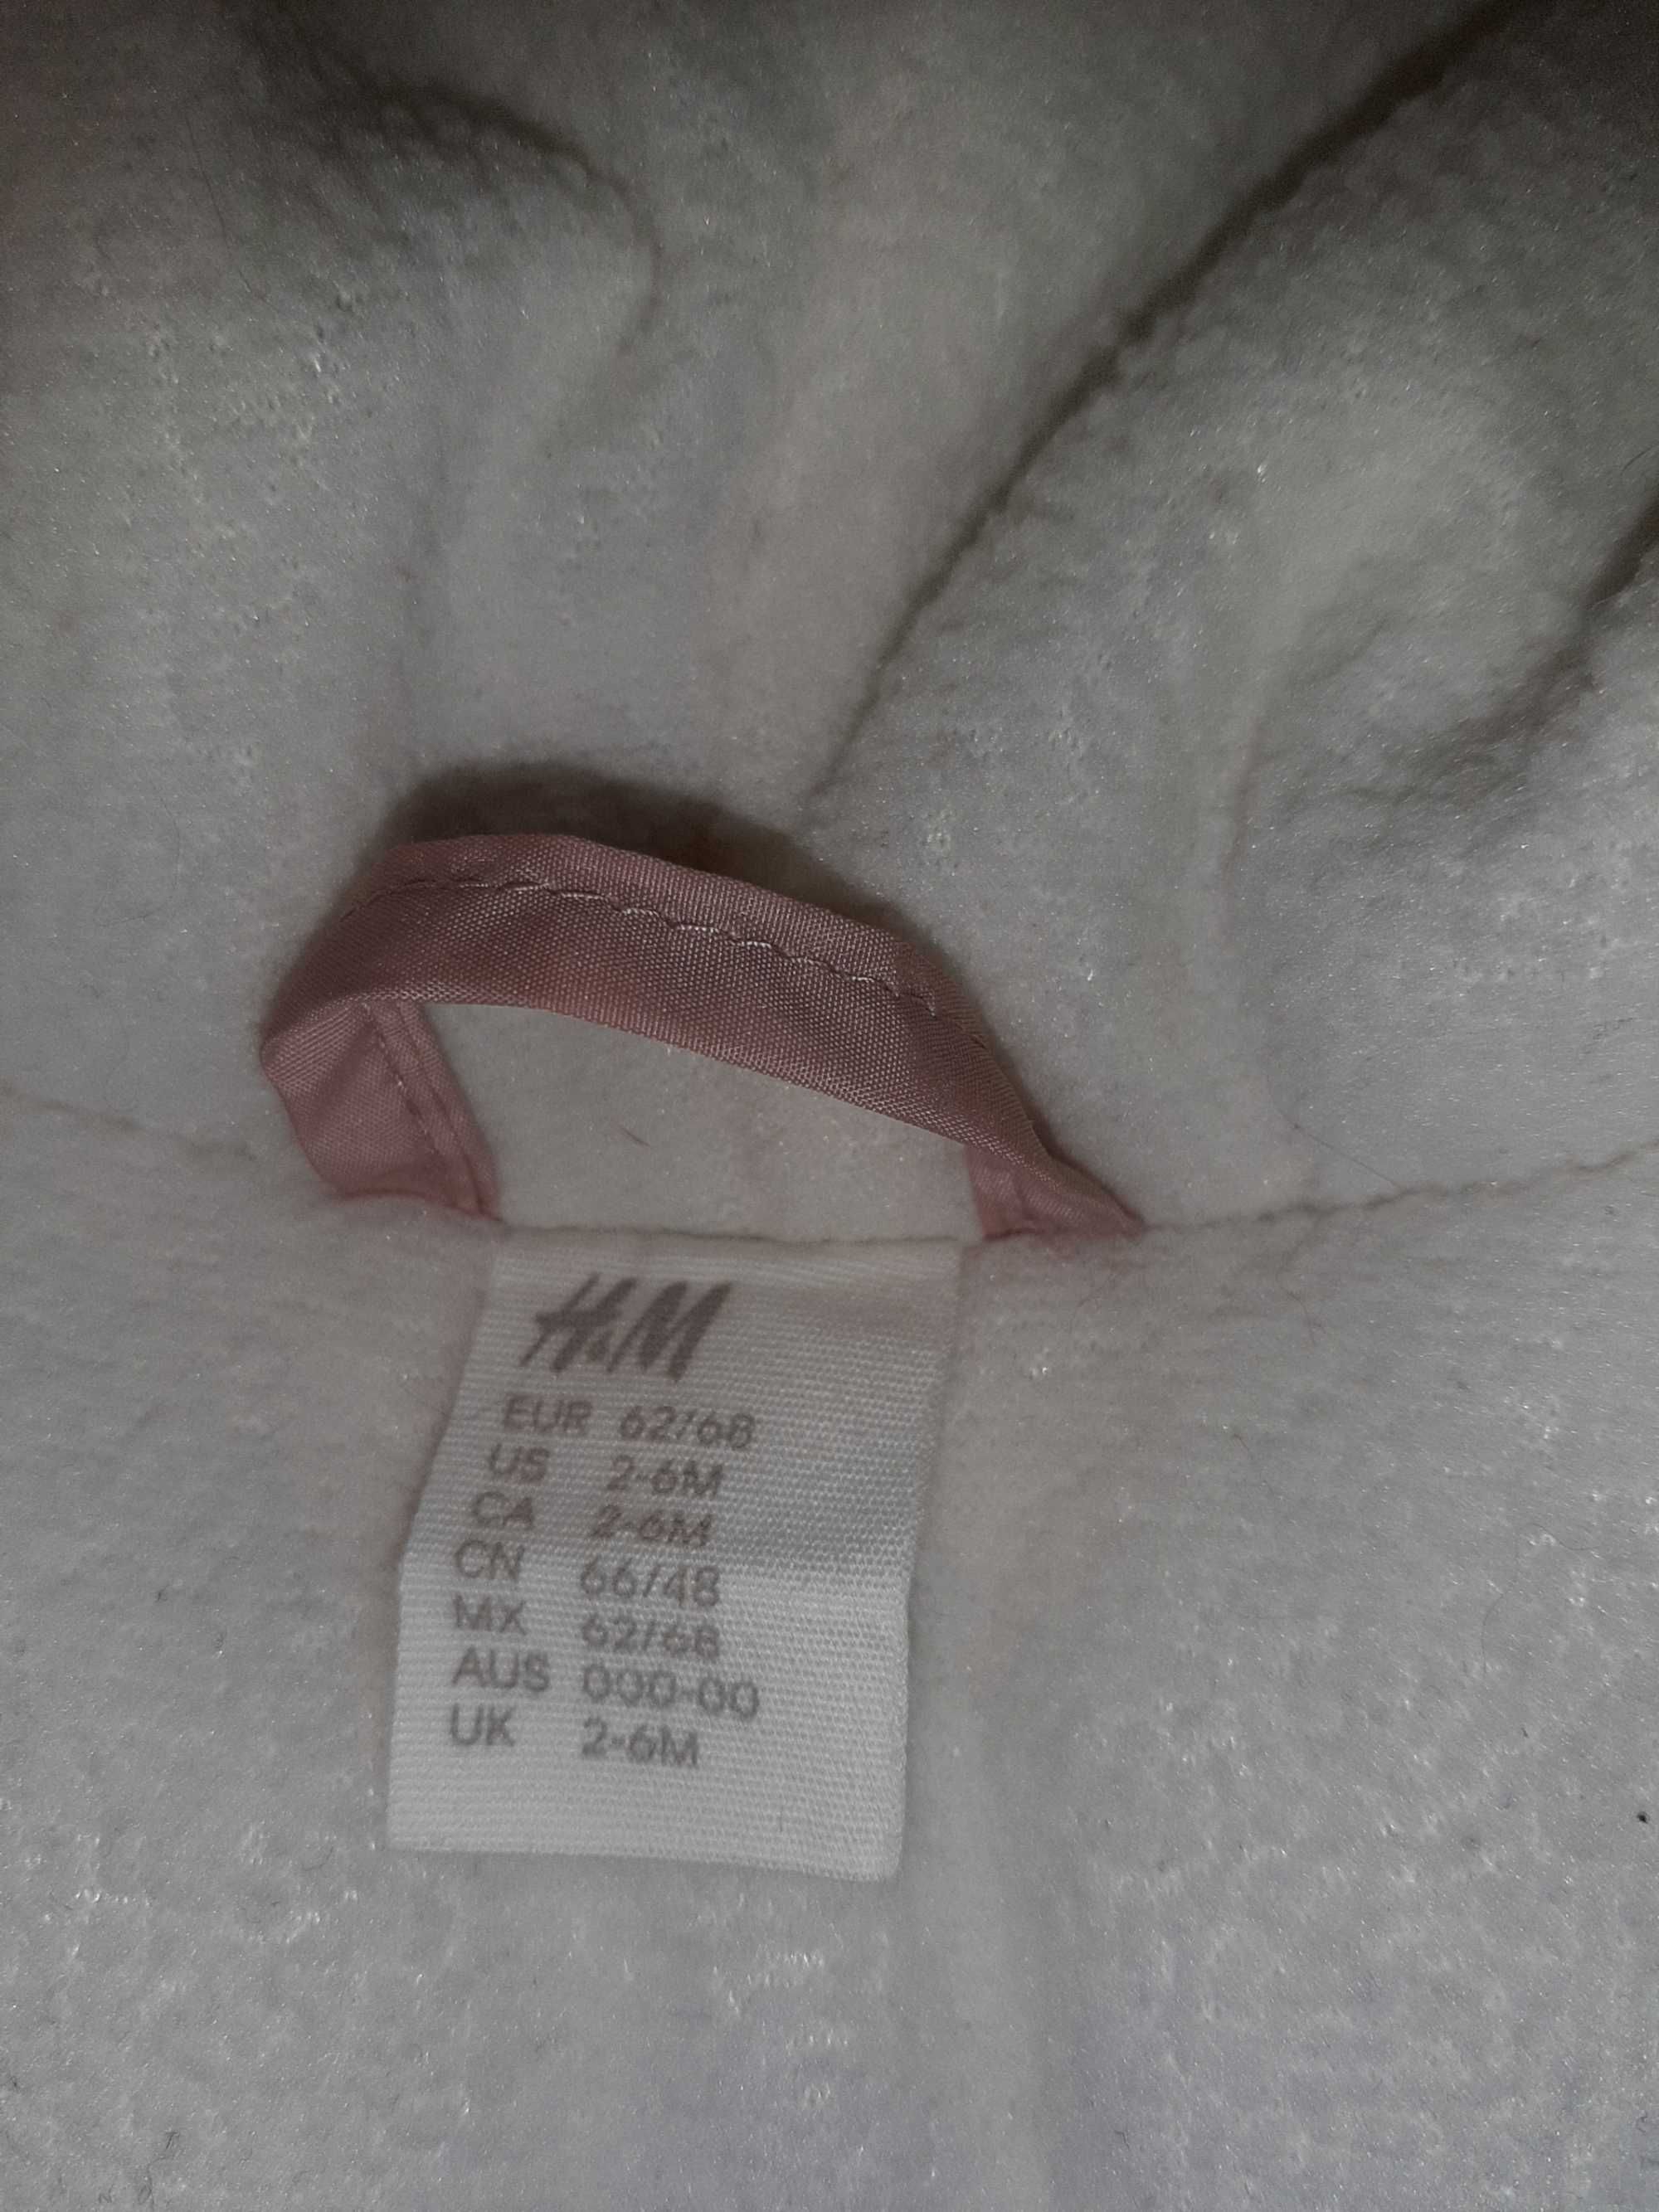 Różowy, watowany, zimowy kombinezon niemowlęcy H'M, rozmiar 62/68.